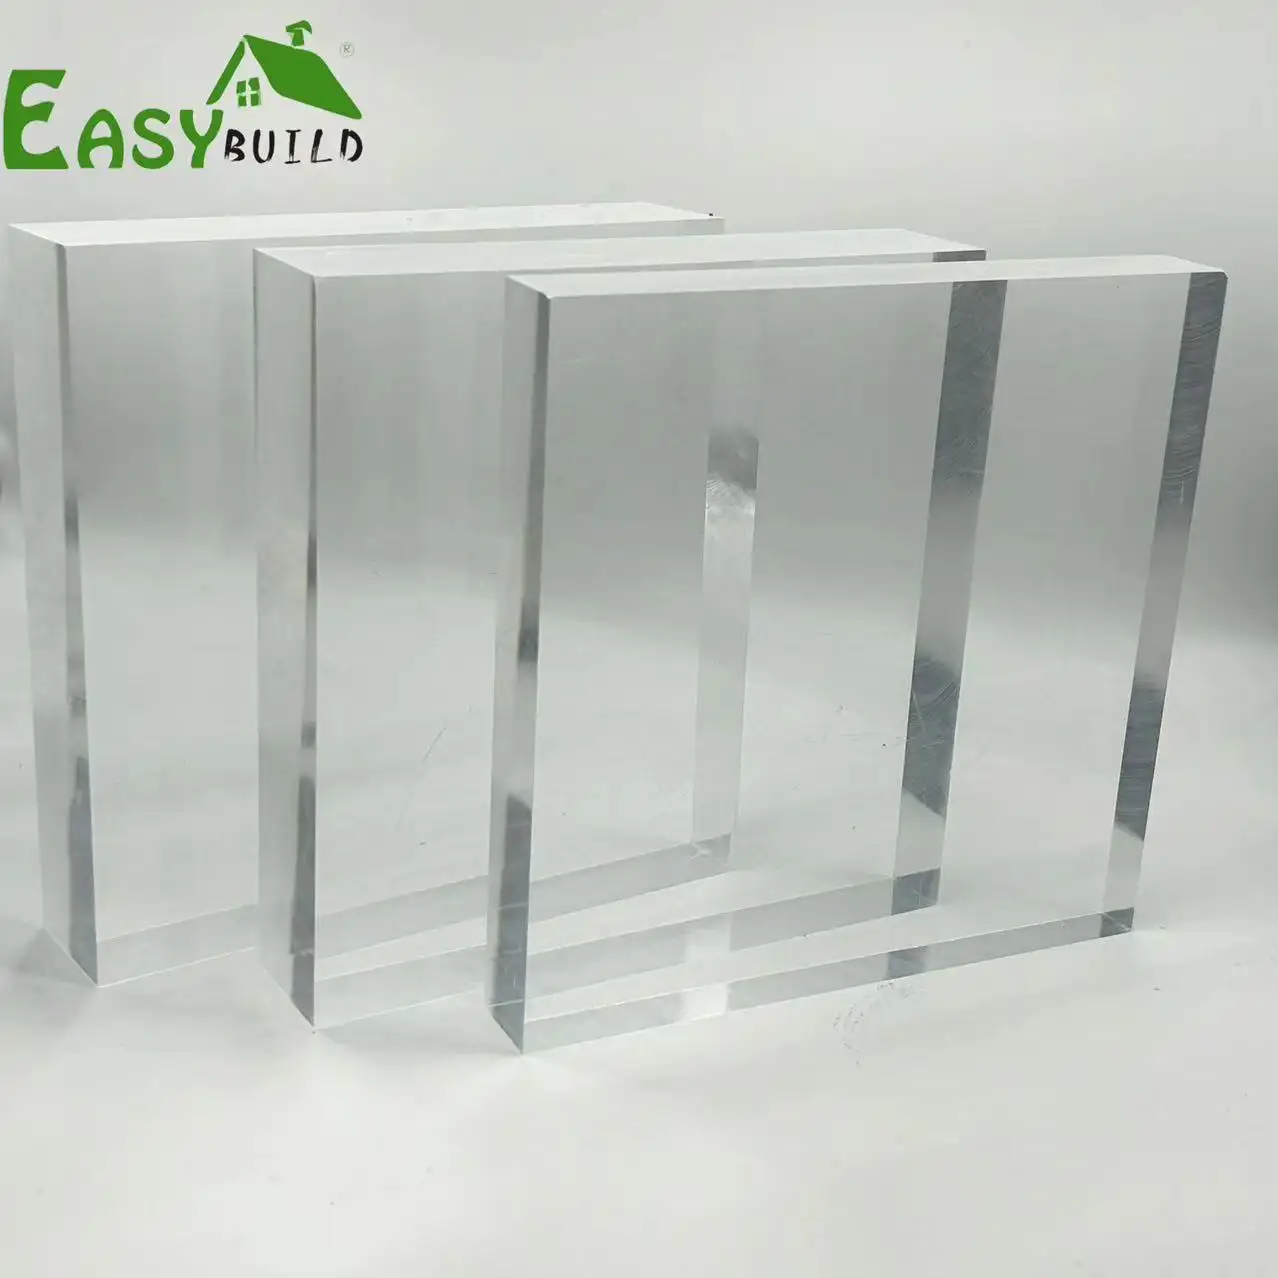 Folha de acrílico fundido transparente flexível Pmma, 1mm 2mm 3mm 4mm 5mm 8mm 1220*2440 4x8ft, folha acrílica transparente transparente